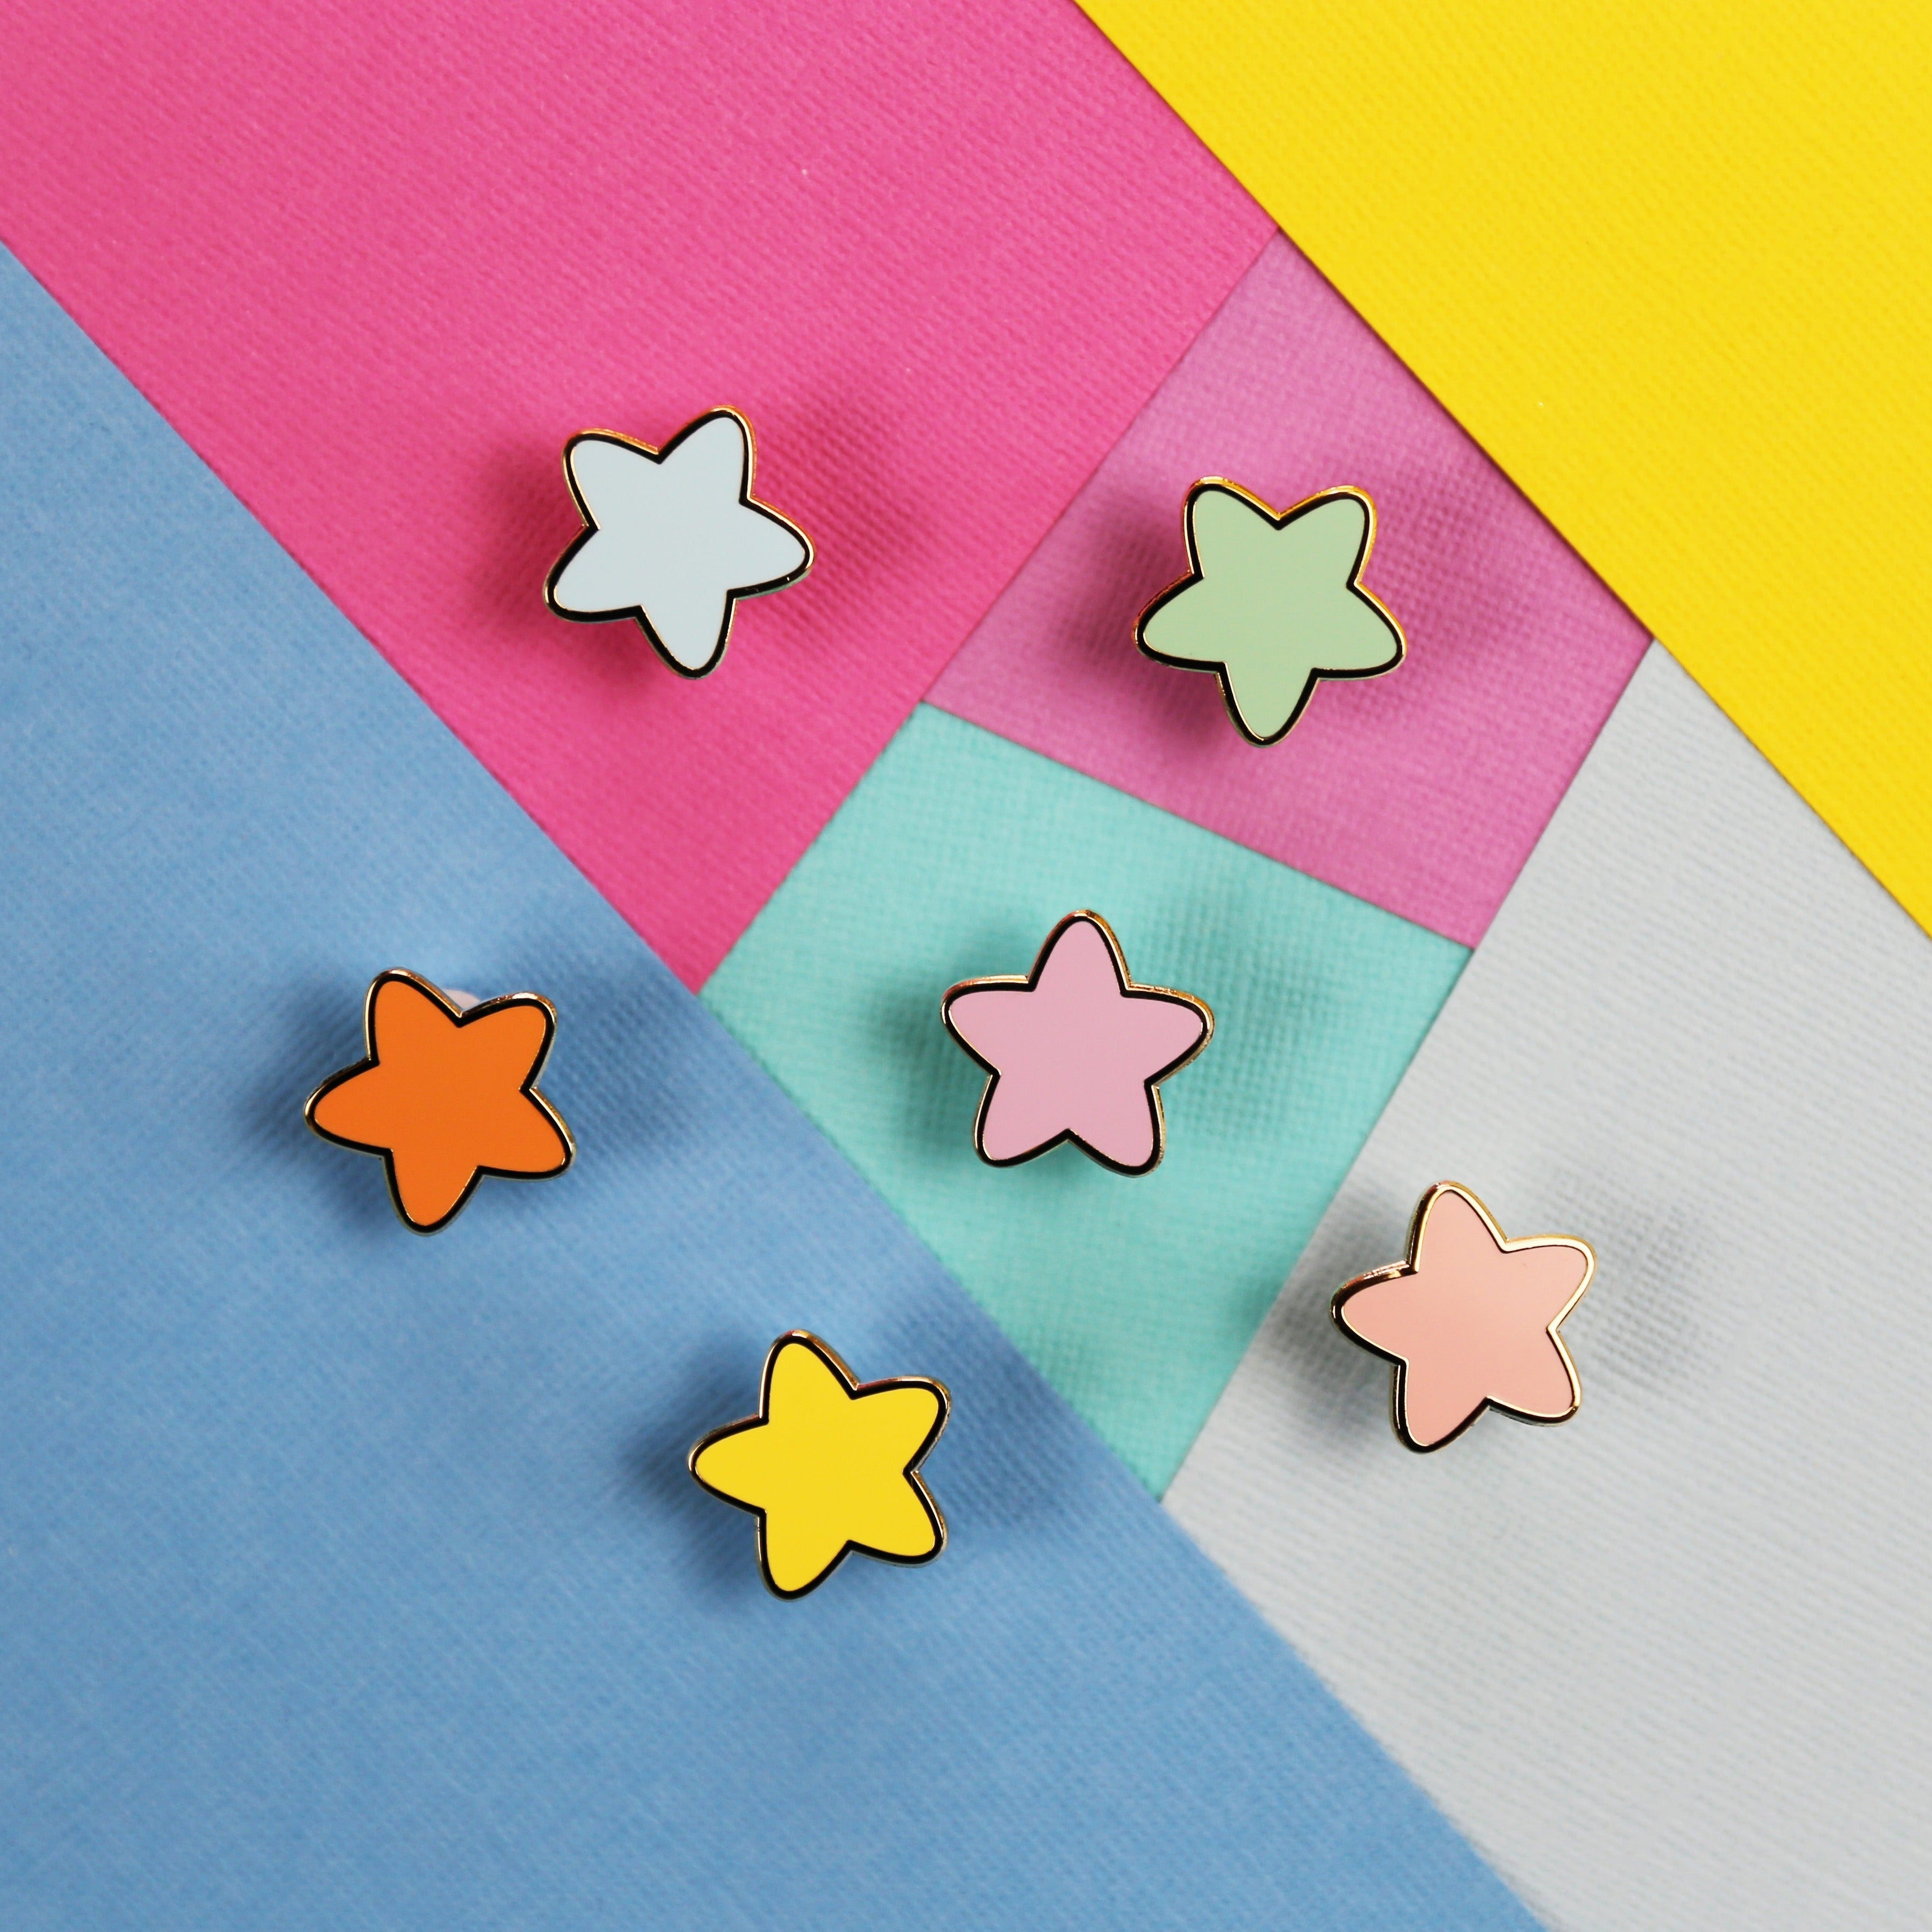 Cute Star Pin Sets